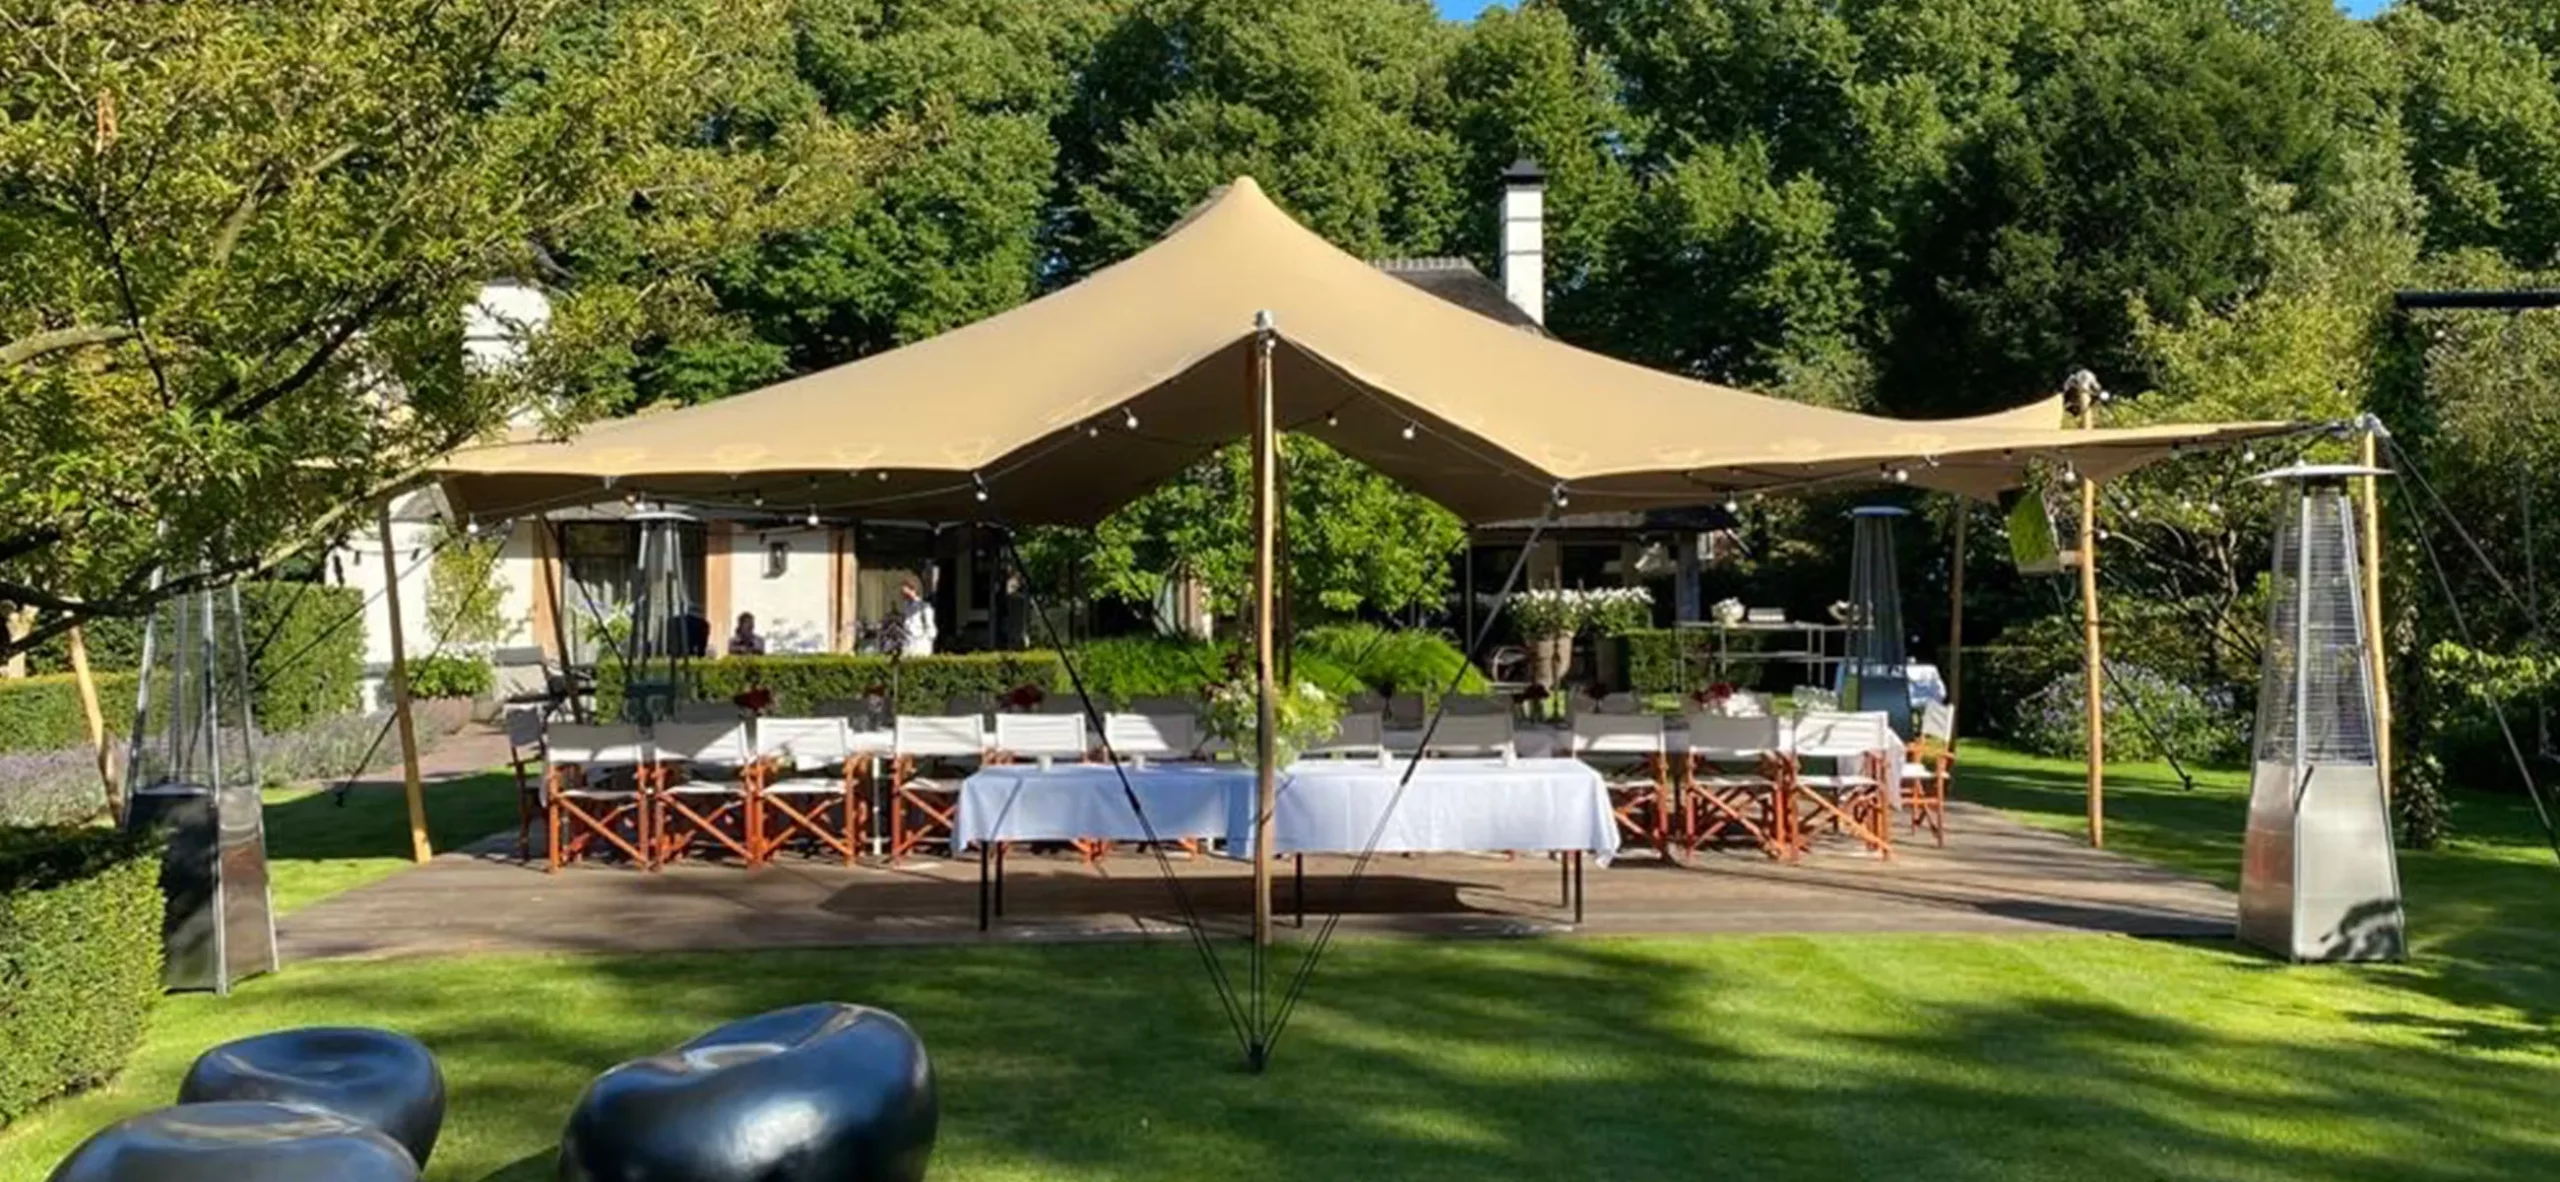 Stretch Zelt von Zeltverleih Intersettle für Geburtstagsparty im Garten - sommerliches Event